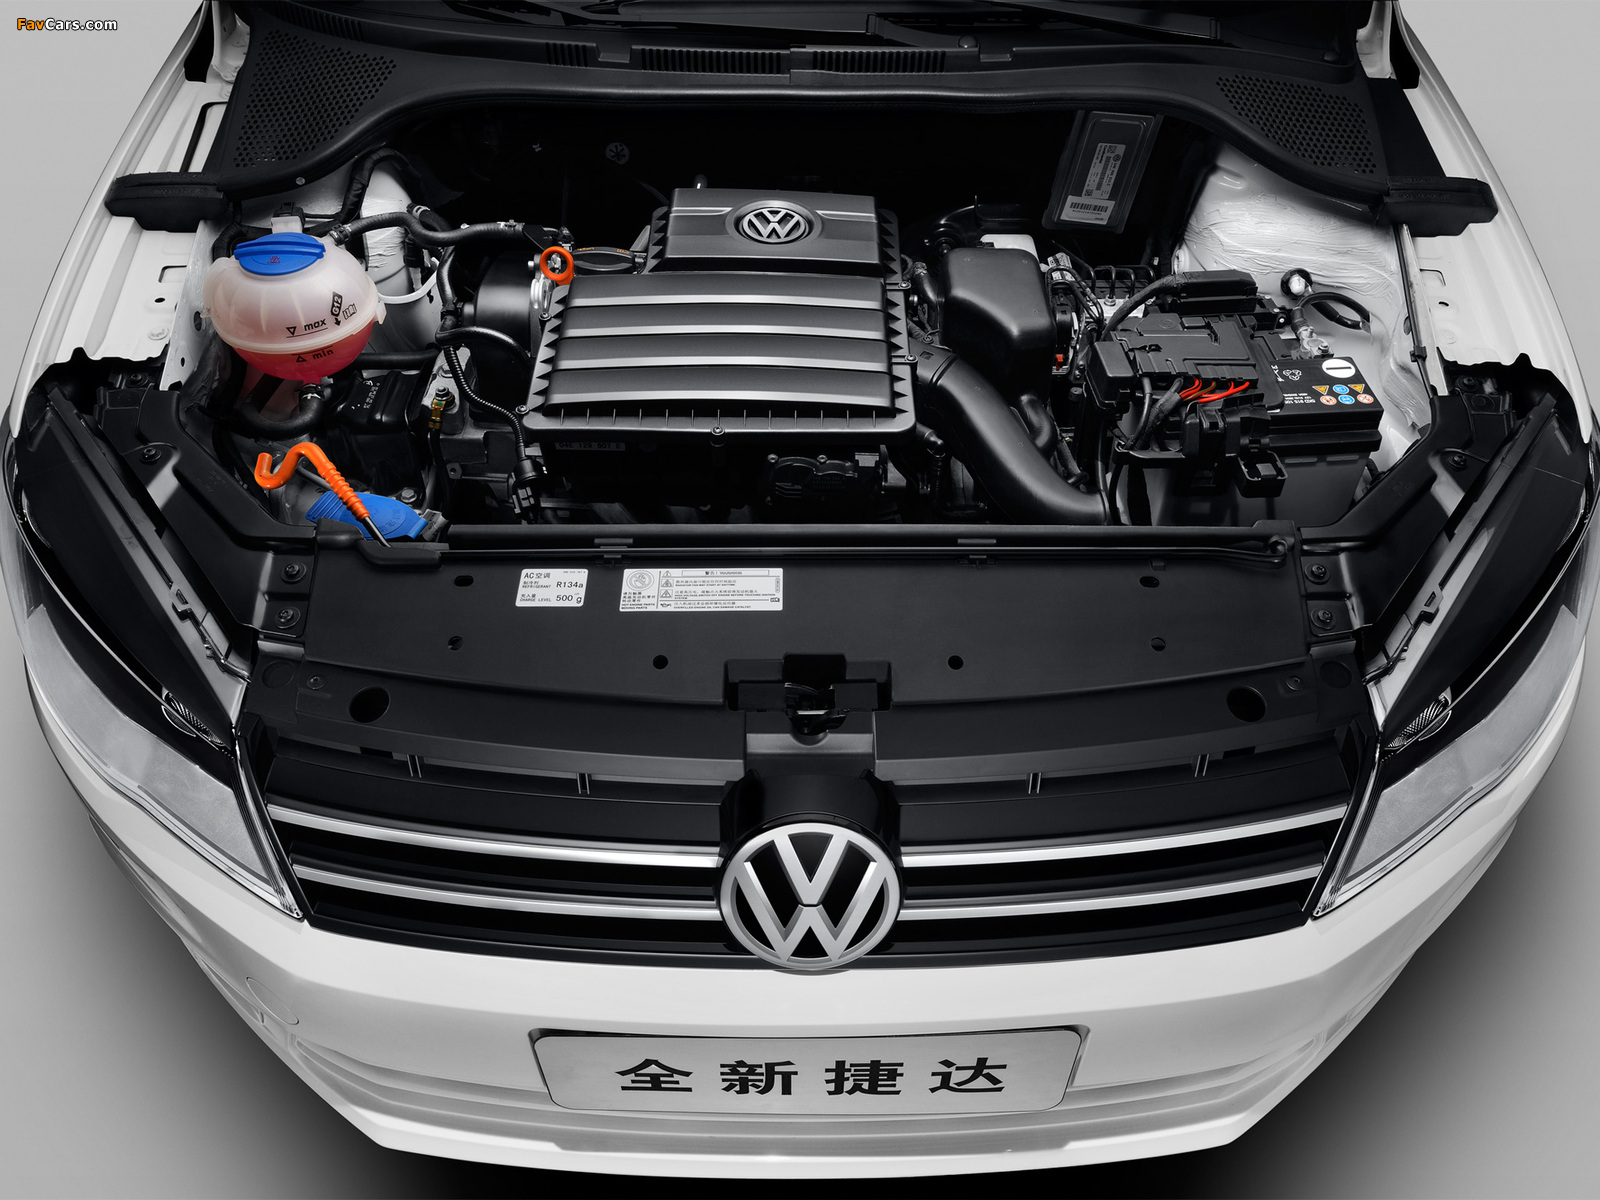 Volkswagen Jetta CN-spec 2013 pictures (1600 x 1200)